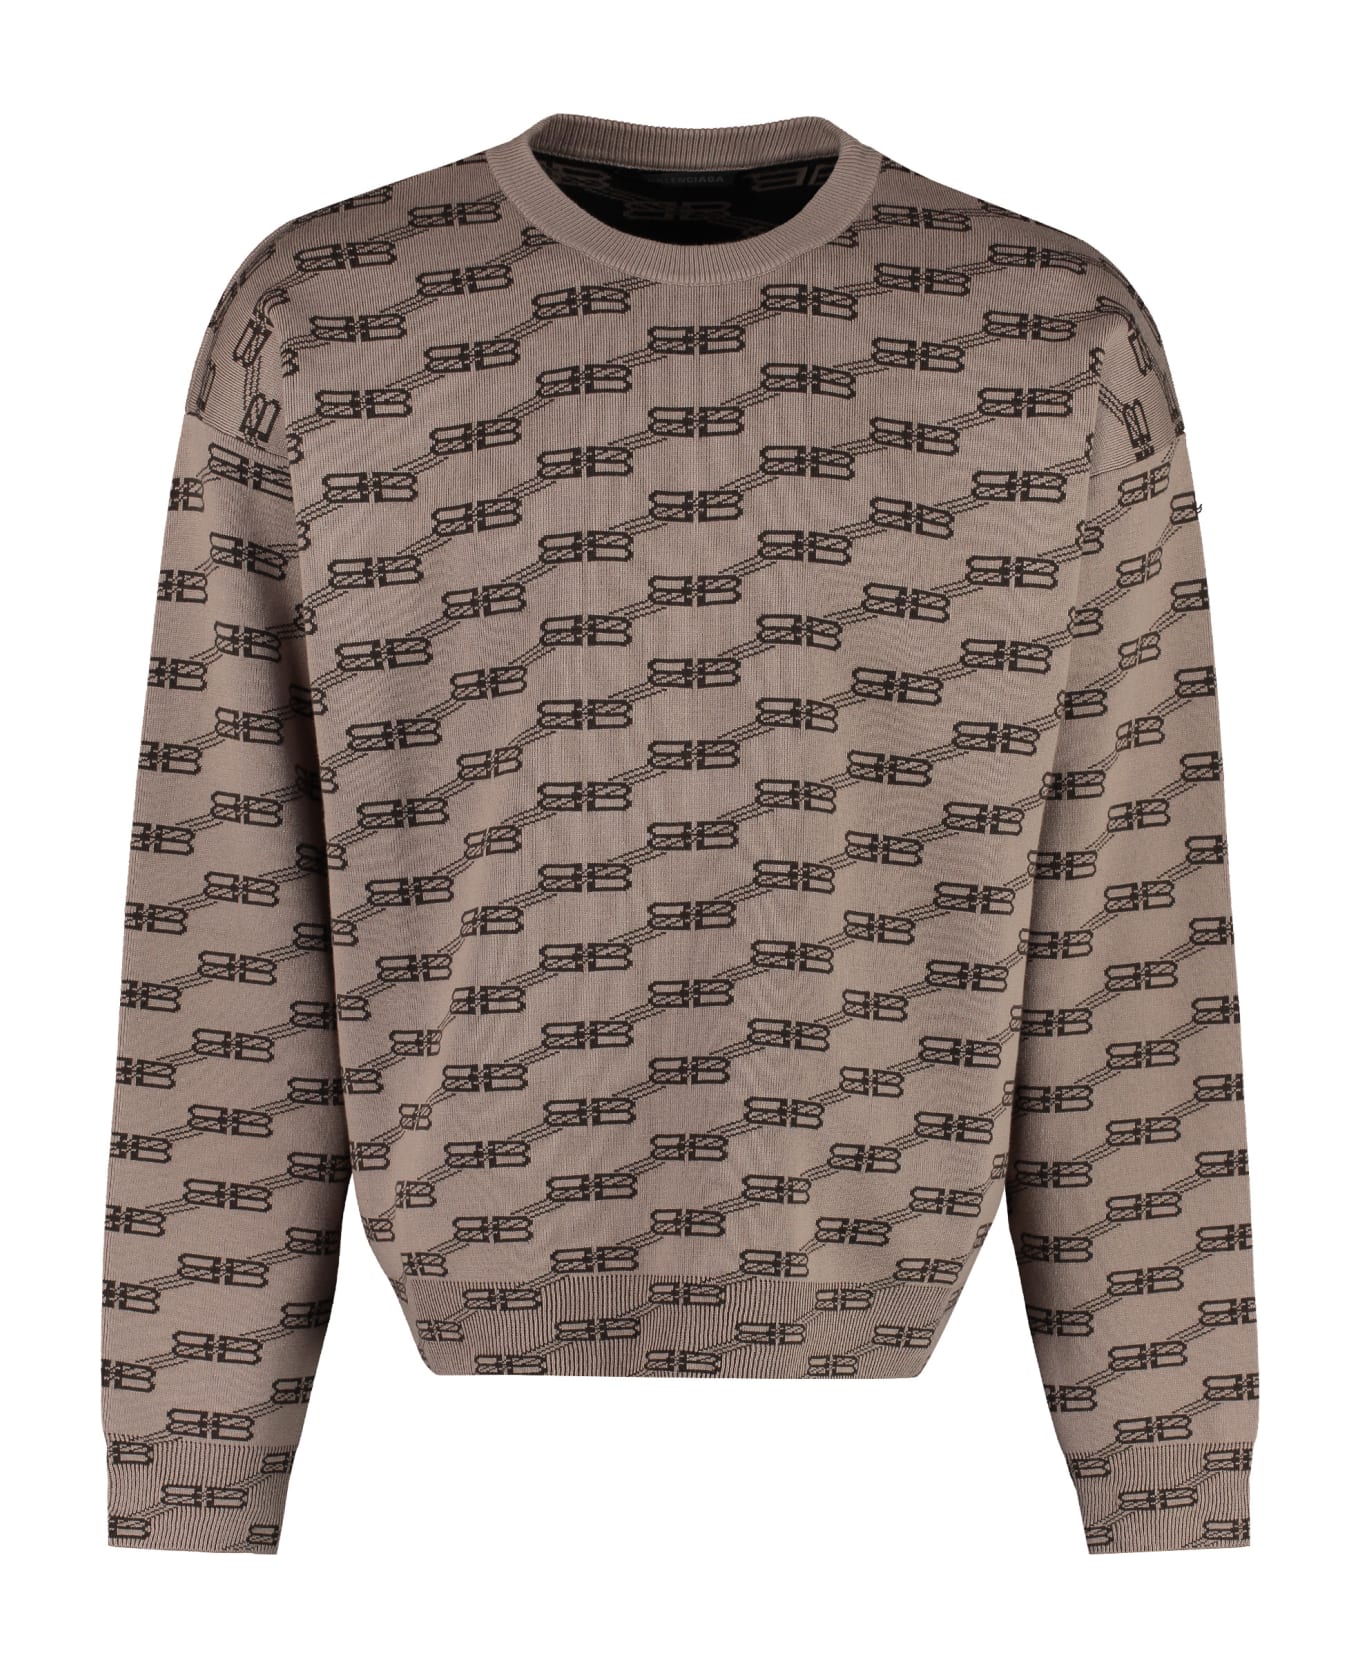 Balenciaga Long Sleeve Crew-neck Sweater - brown